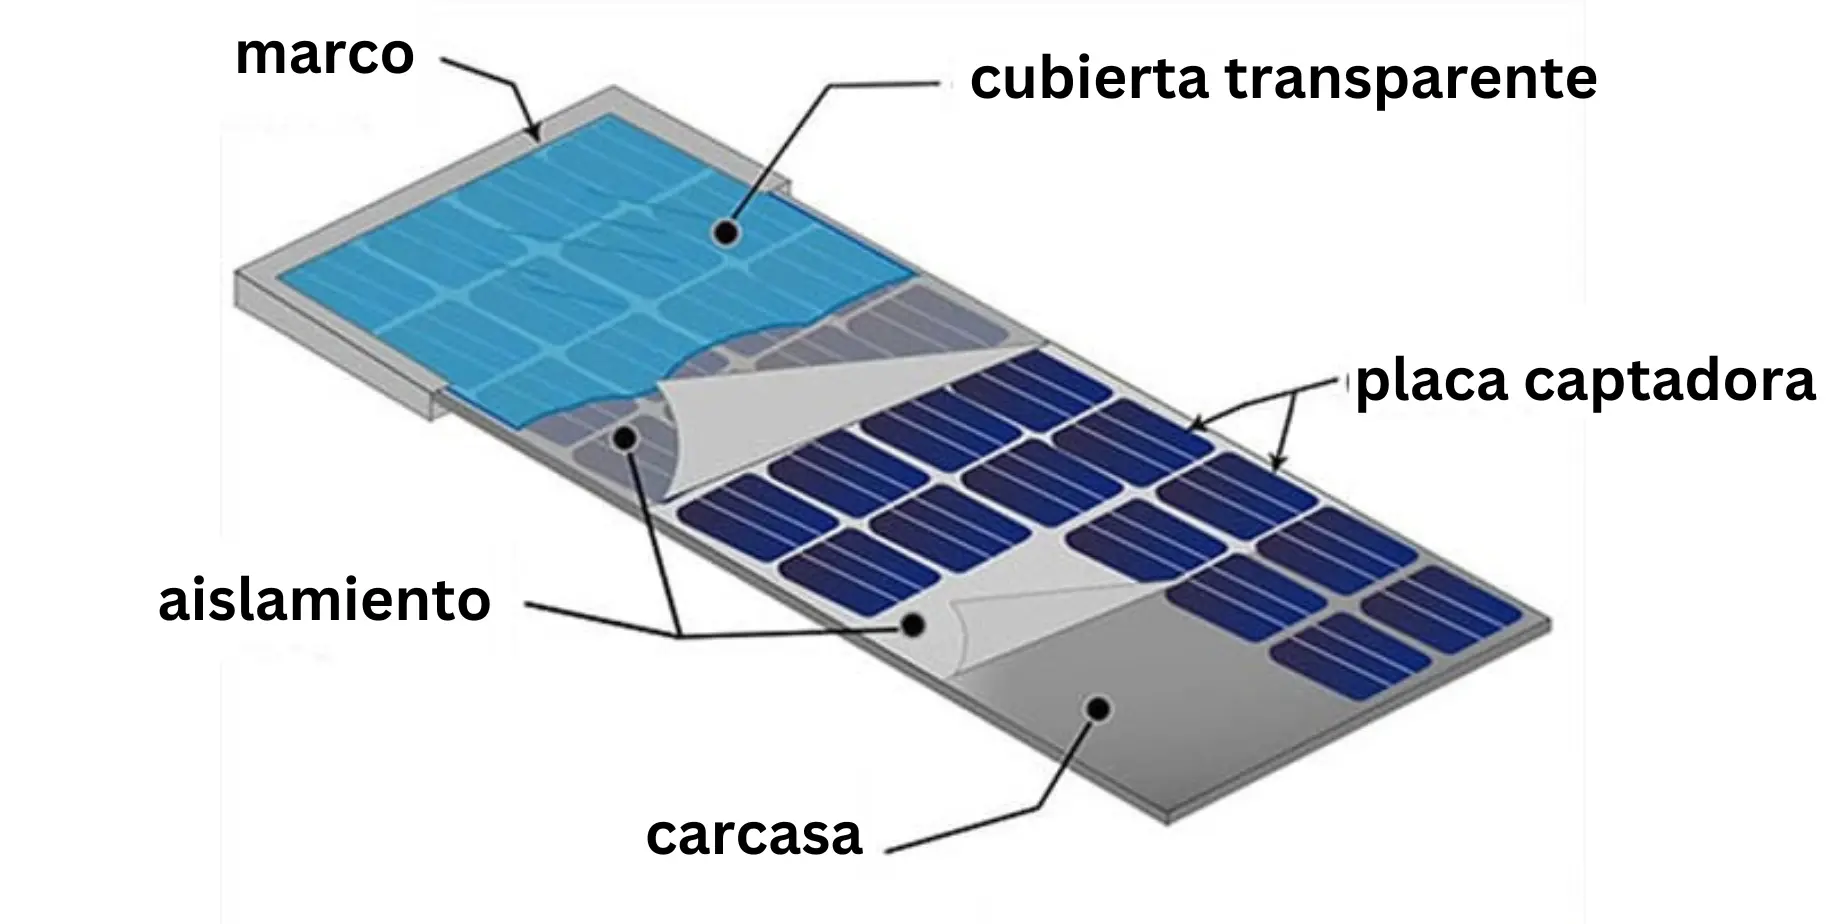 nombre de las piezas de sujebcion de una placa solar - Qué elementos componen una instalación de autoconsumo con paneles fotovoltaicos